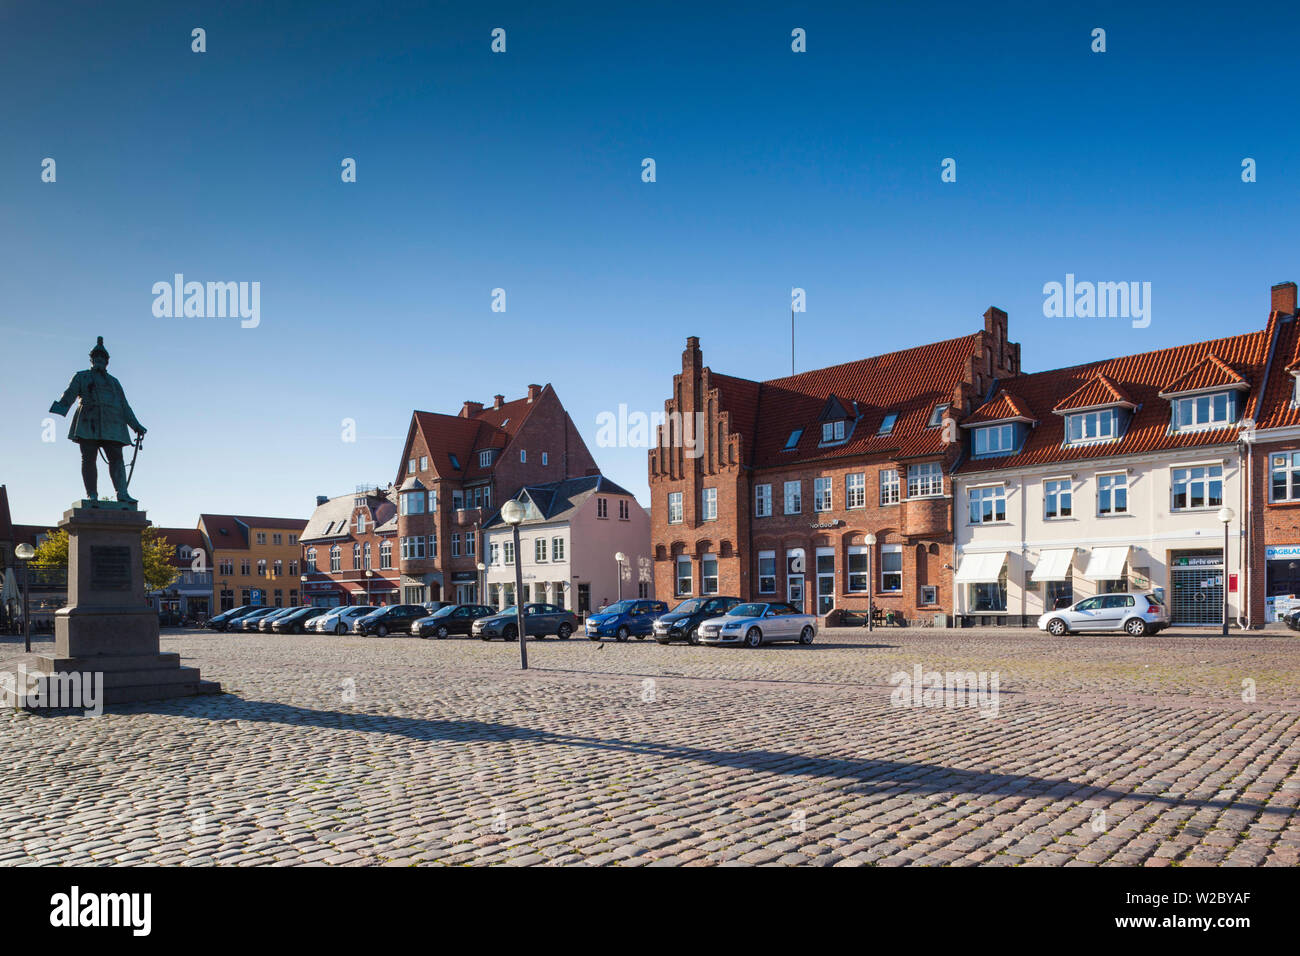 Denmark, Zealand, Koge, The Torvet, largest town square in Denmark Stock Photo